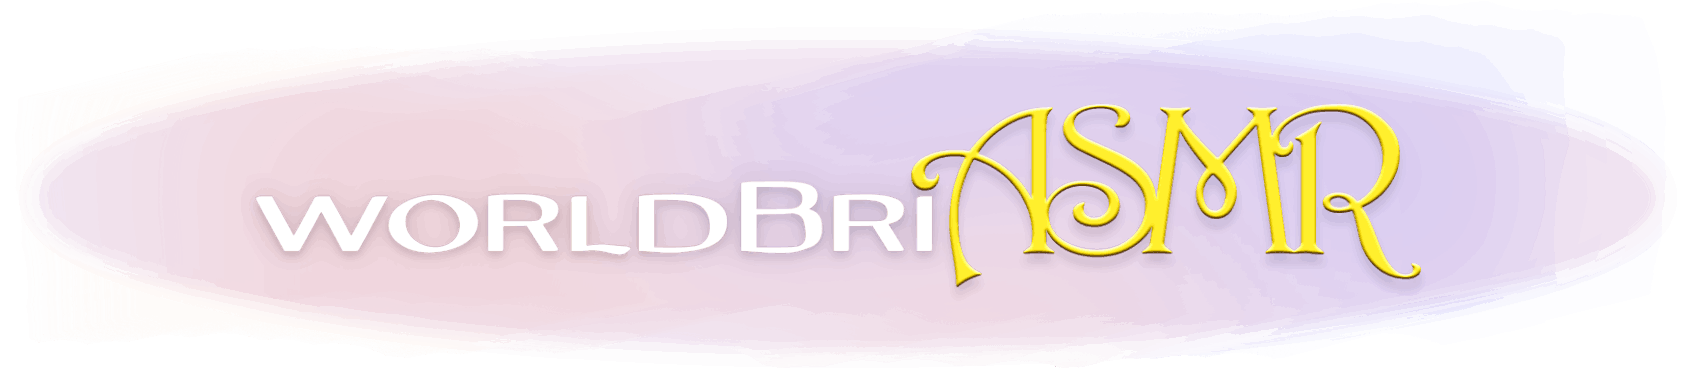 Worldbri ASMR logo